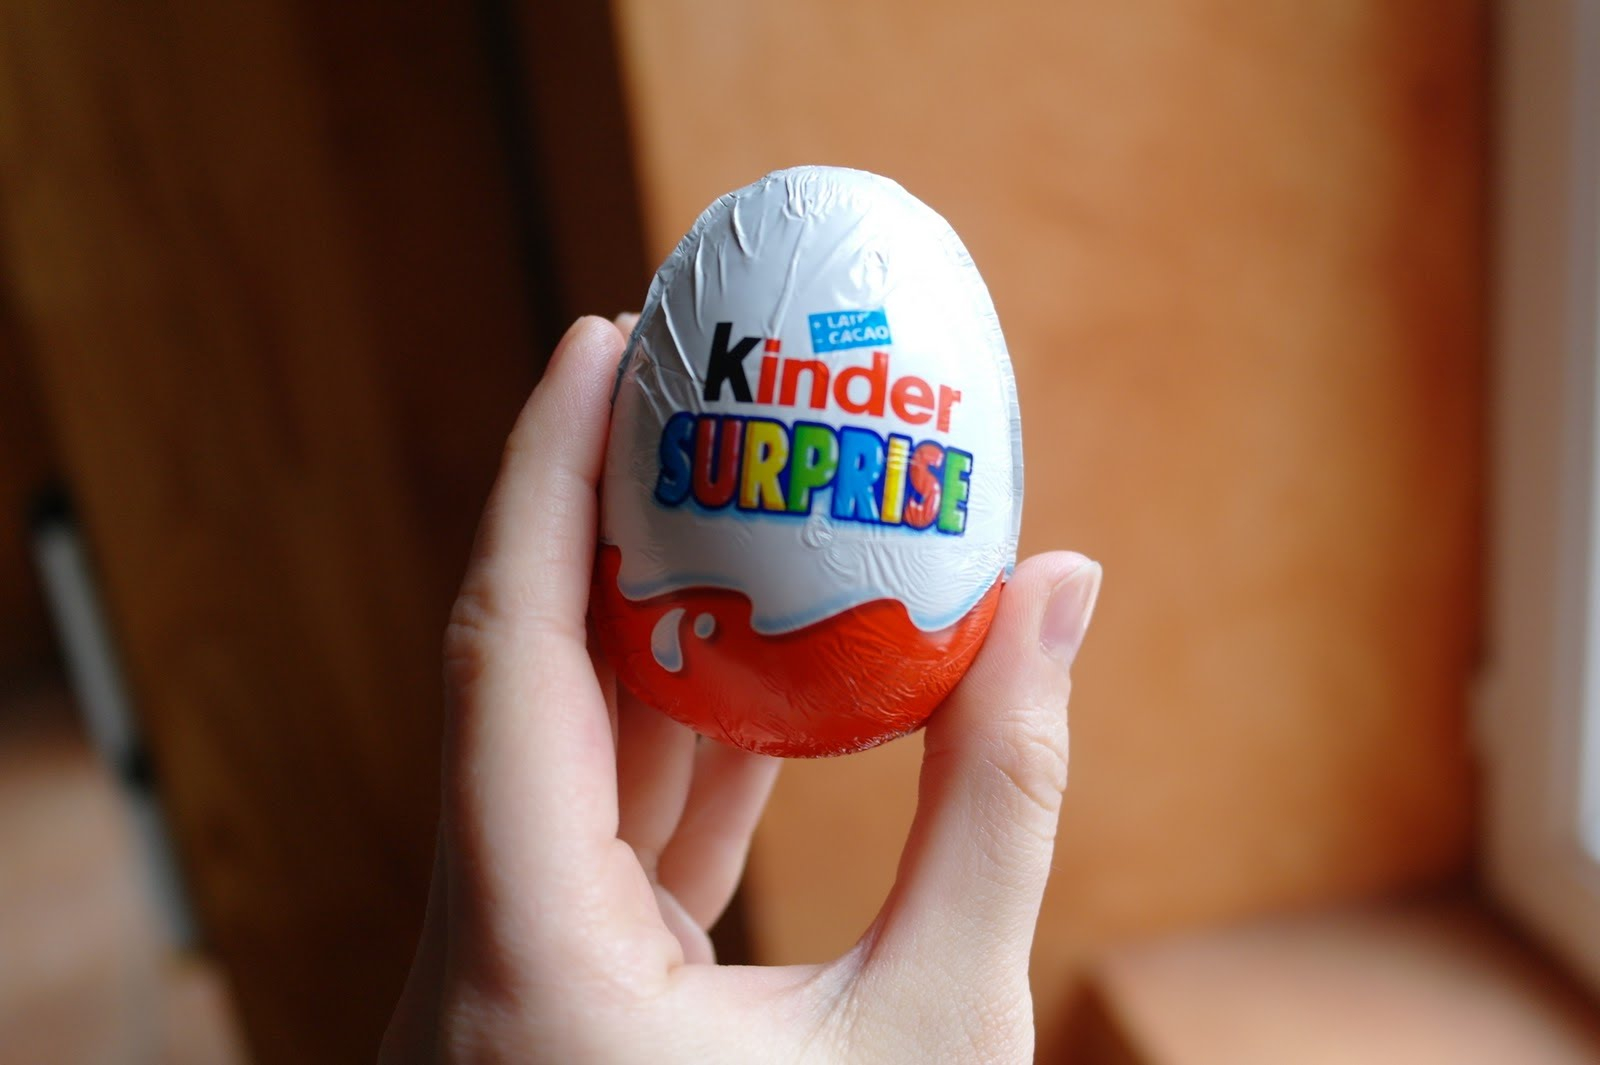 АПБА обратилась к предпринимателям с просьбой снять с продажи Kinder Eggs